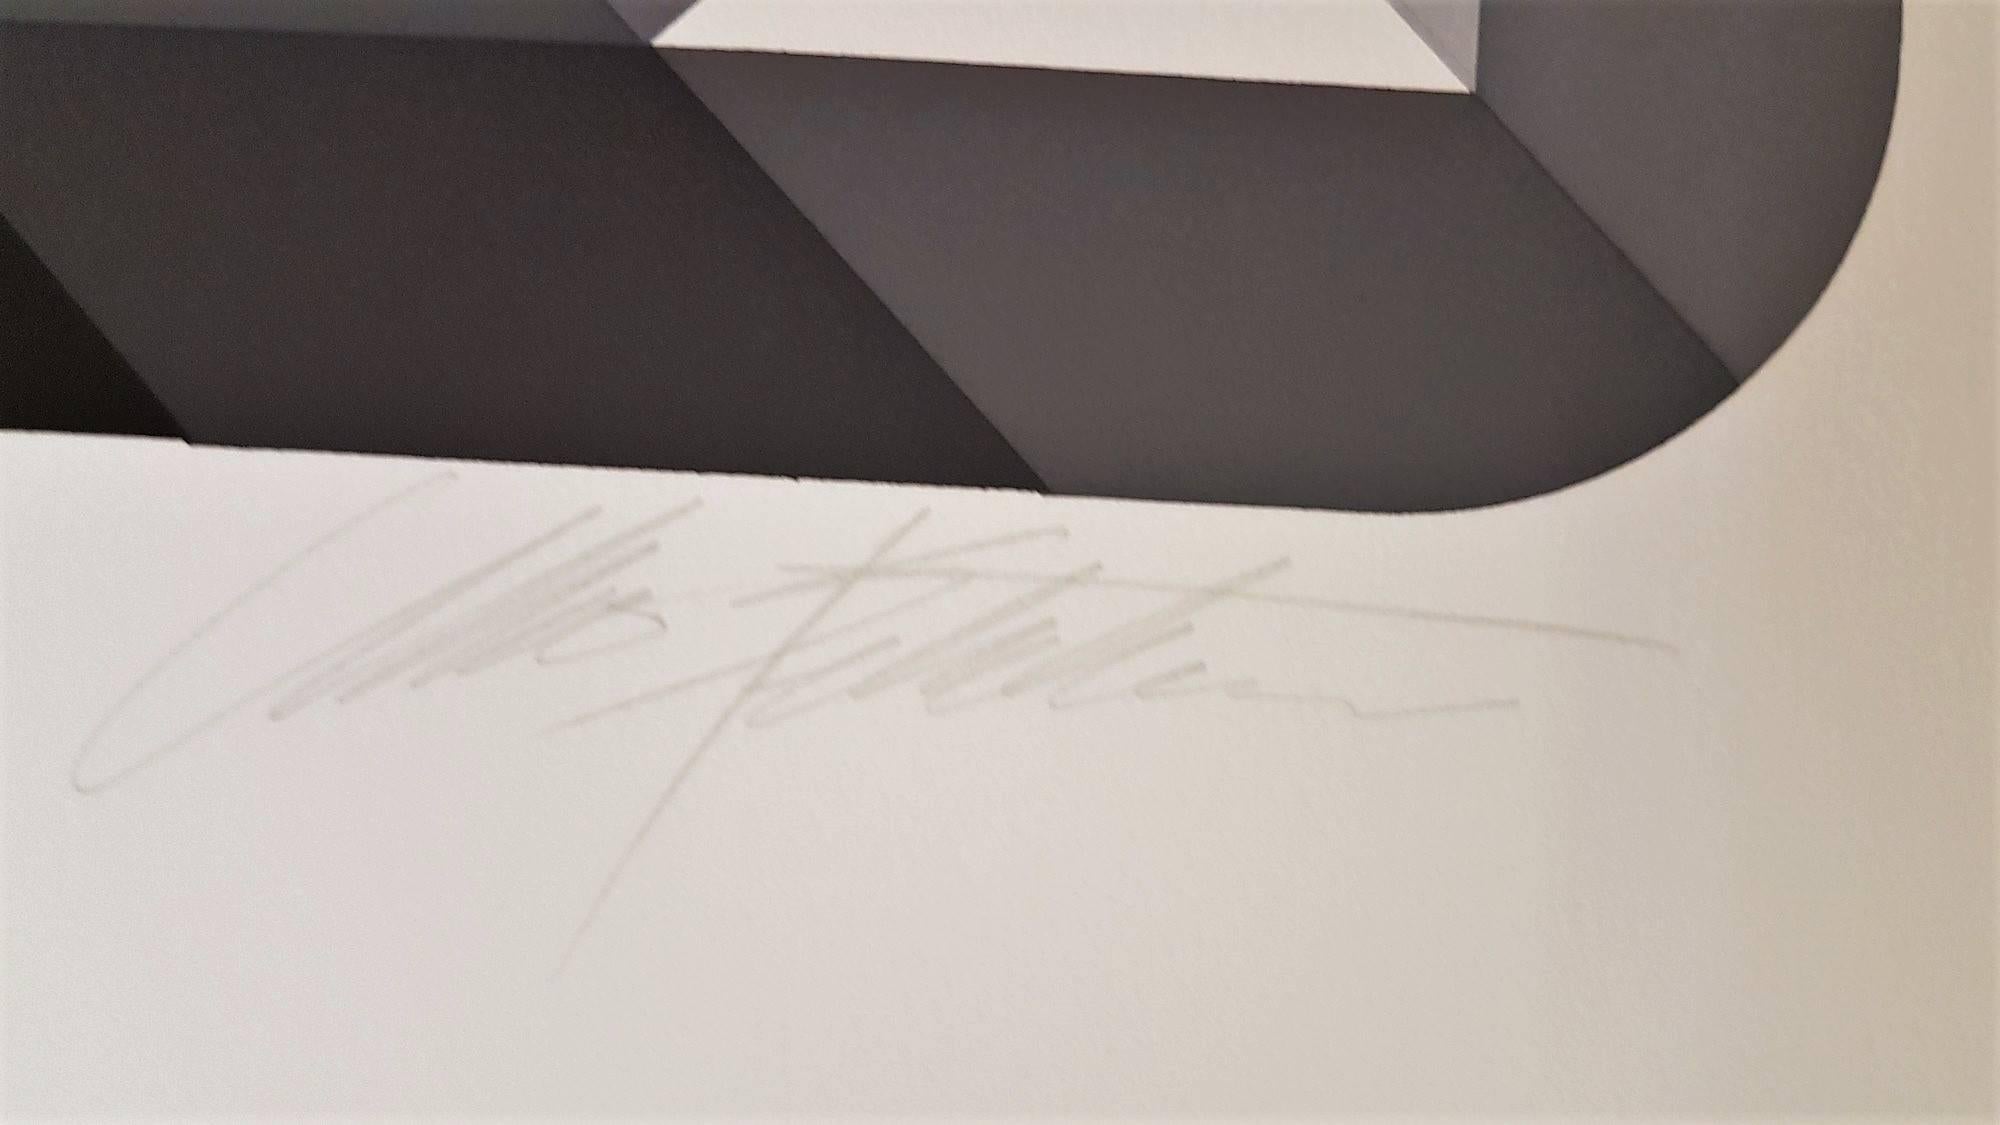 Prizma VI
Farbe Siebdruck
Von Hand signiert und betitelt
Größe: 20,3 × 20,3 auf 28,9 × 25,0 Zoll
COA bereitgestellt

Marko Spalatin wurde in Zagreb, Kroatien, geboren. Im späten Teenageralter wanderte er in die USA ein und erwarb an der University